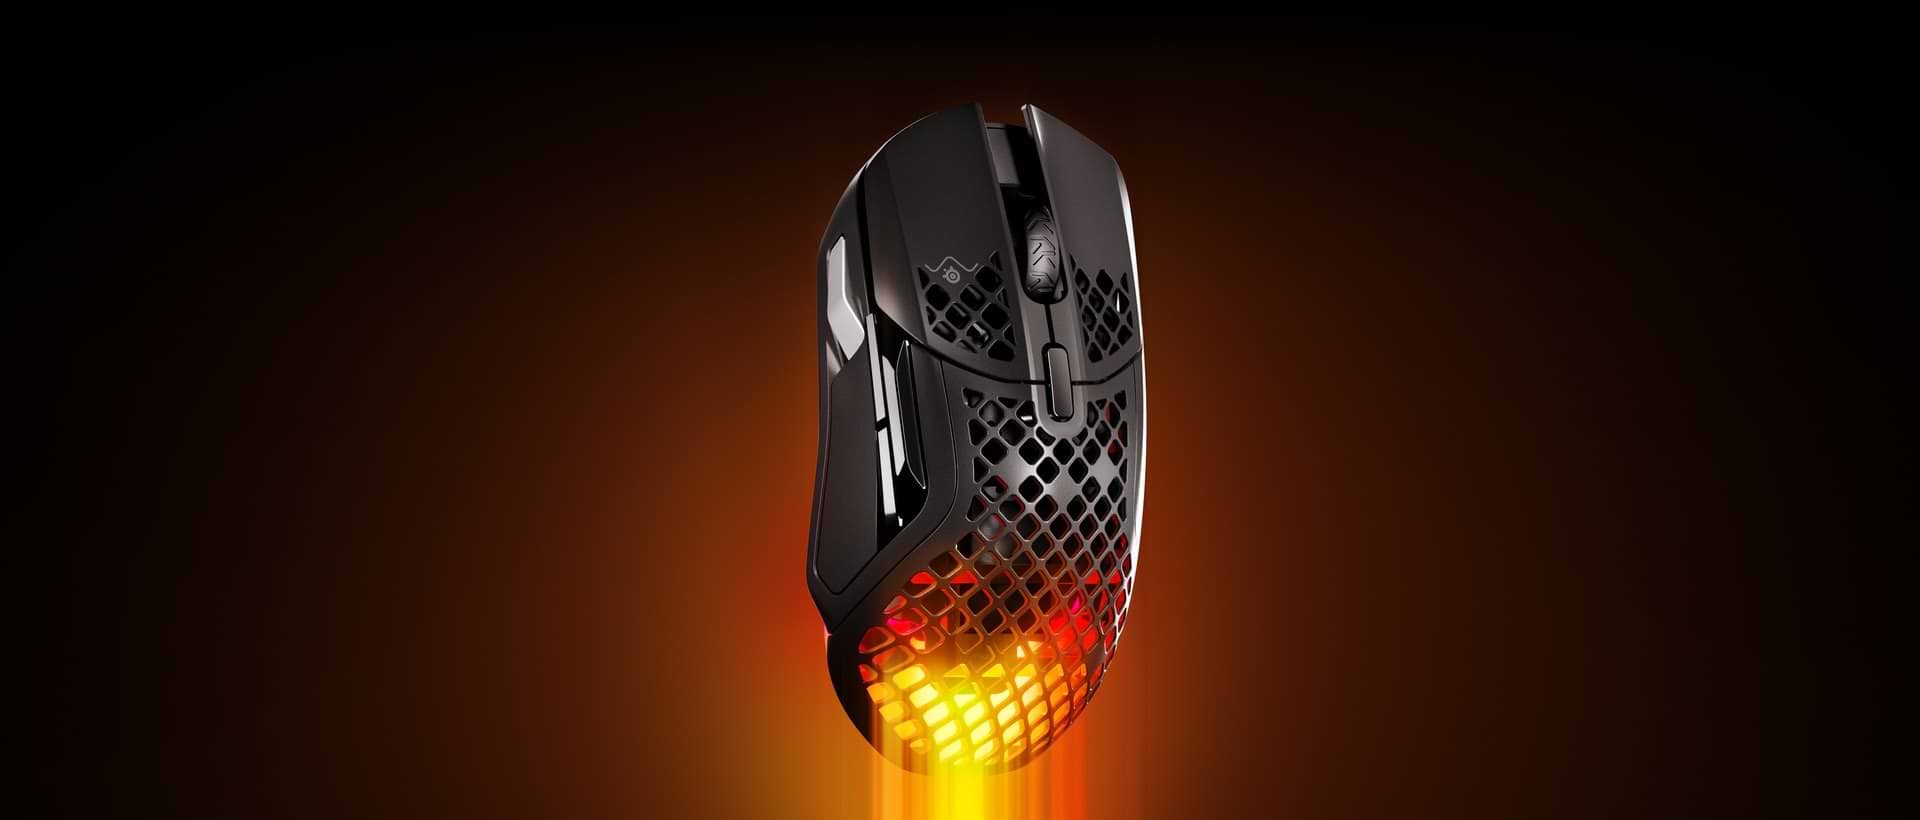 עכבר גיימינג אלחוטי SteelSeries Aerox 5 Wireless - צבע שחור שנתיים אחריות ע"י היבואן הרשמי